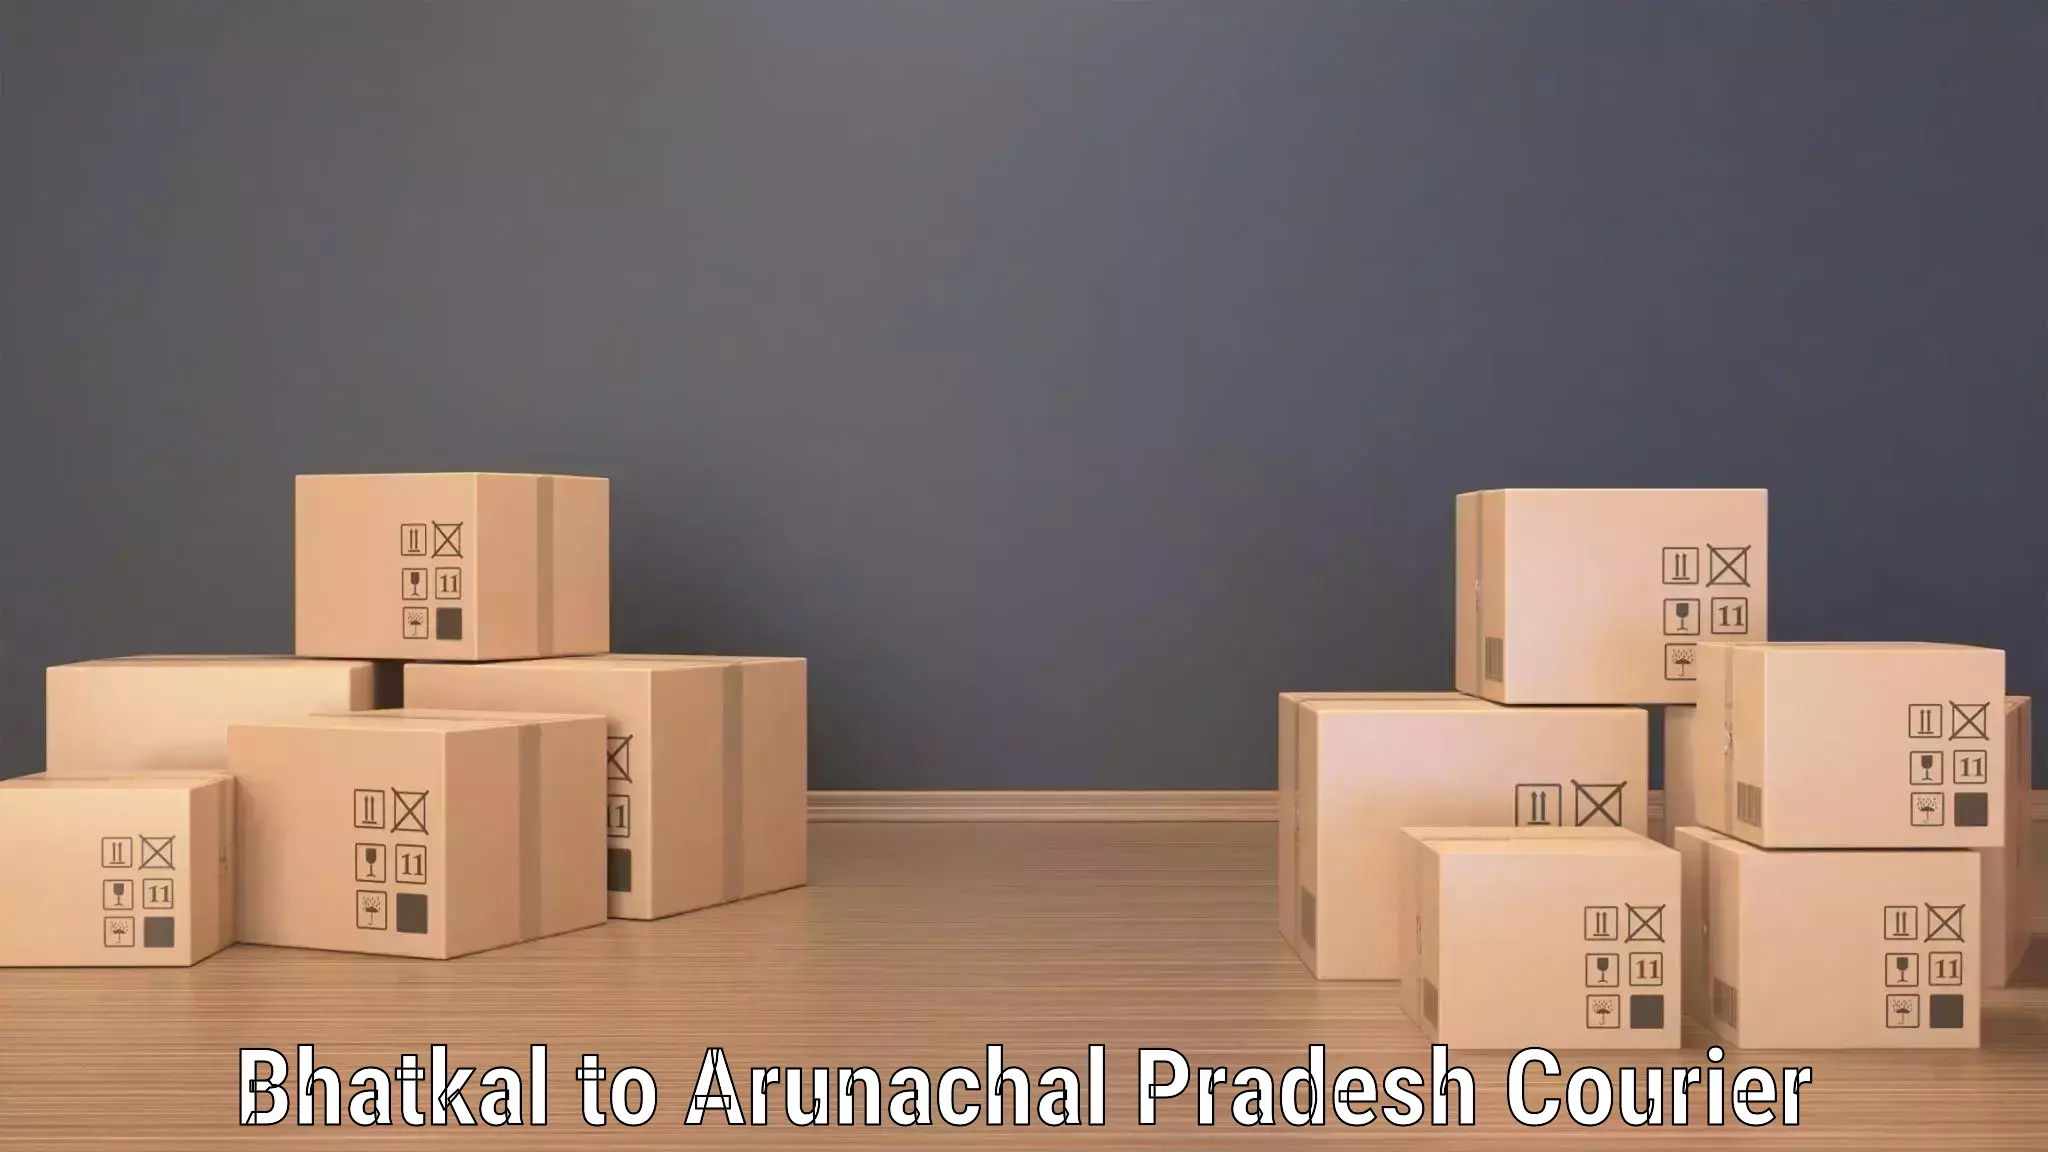 Modern courier technology Bhatkal to Arunachal Pradesh